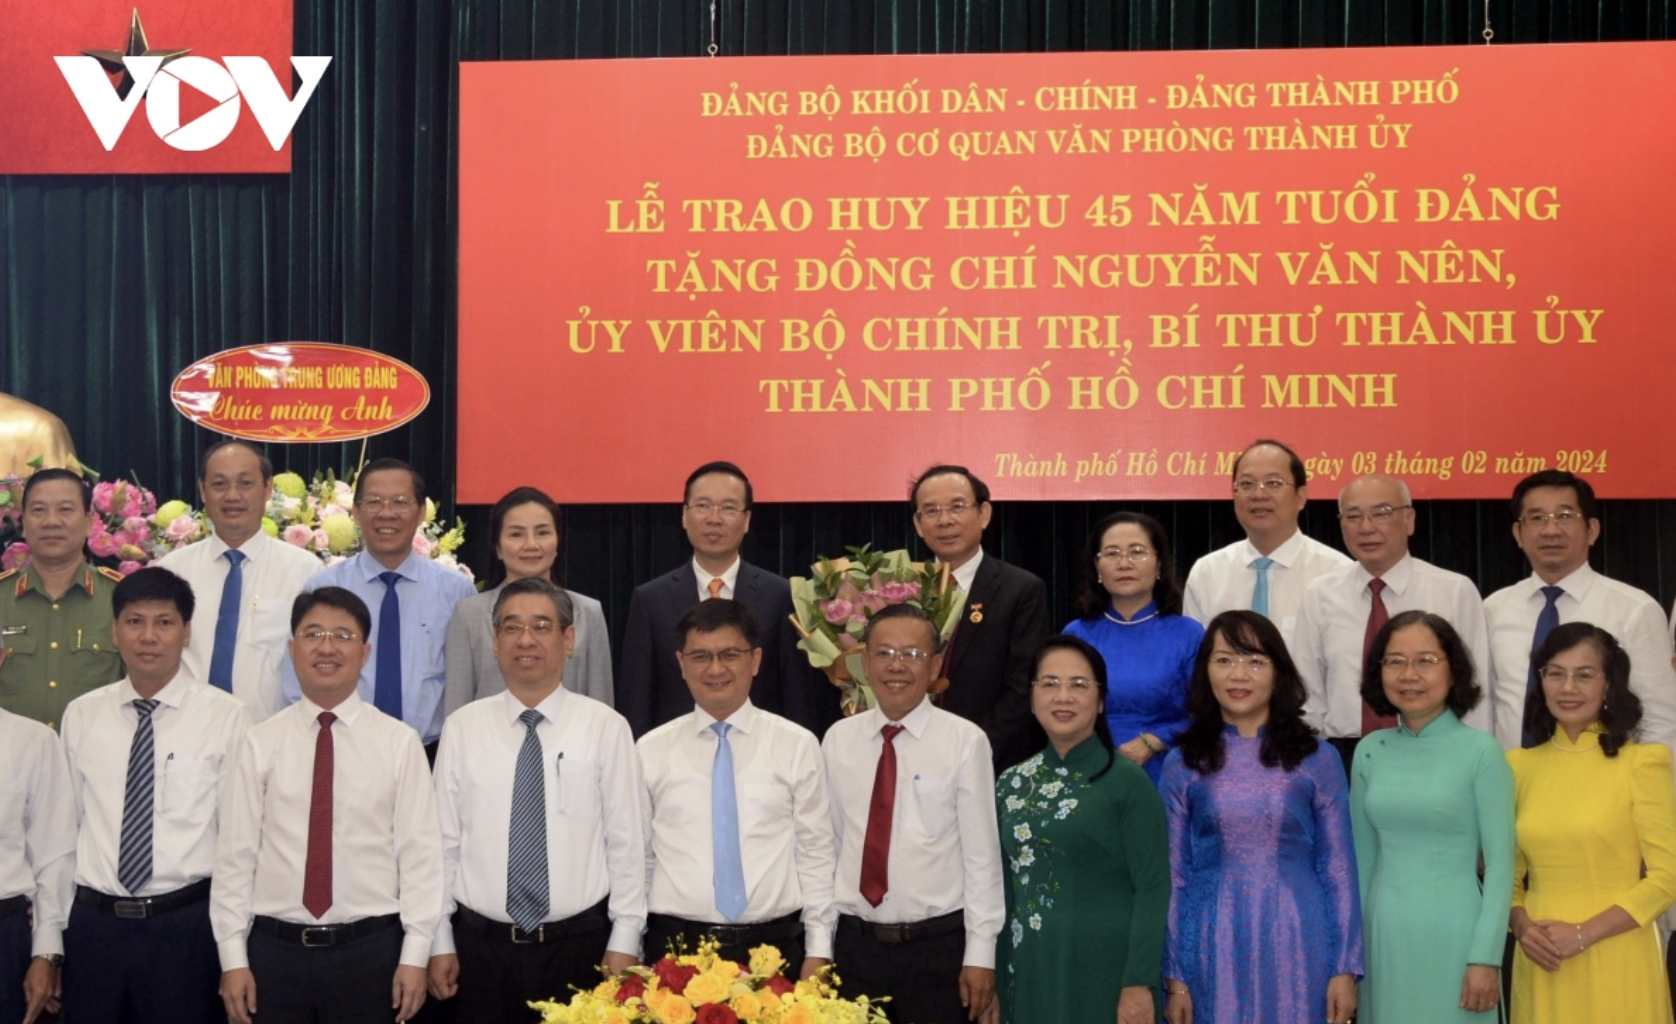 Chủ tịch nước Võ Văn Thưởng, ông Nguyễn Văn Nên và các đại biểu tham dự buổi Lễ trao Huy hiệu.( Ảnh: Hà Khánh)